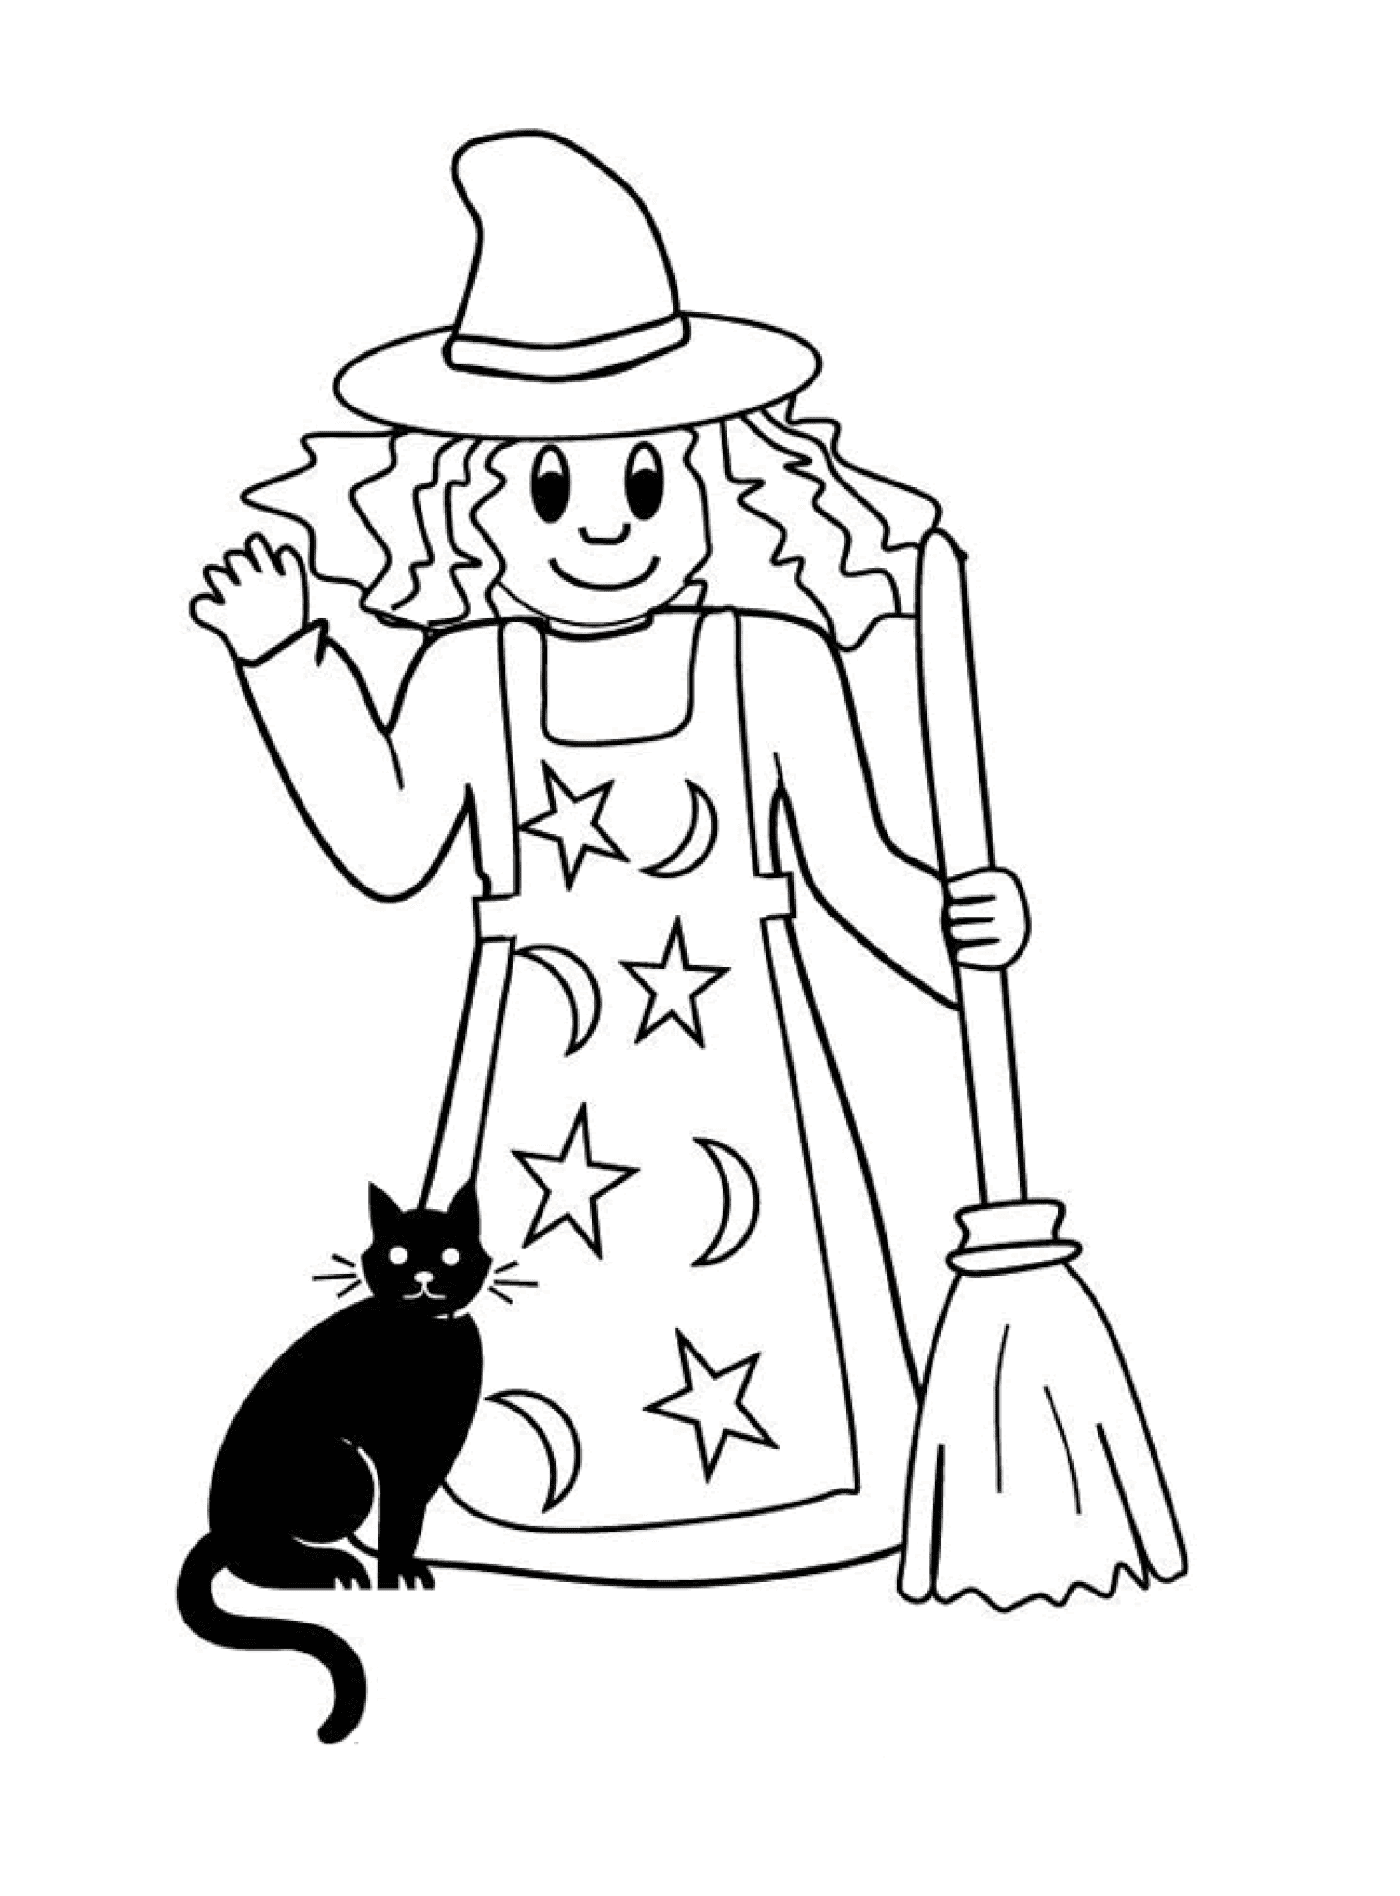  Strega semplice accompagnata dal suo gatto nero 